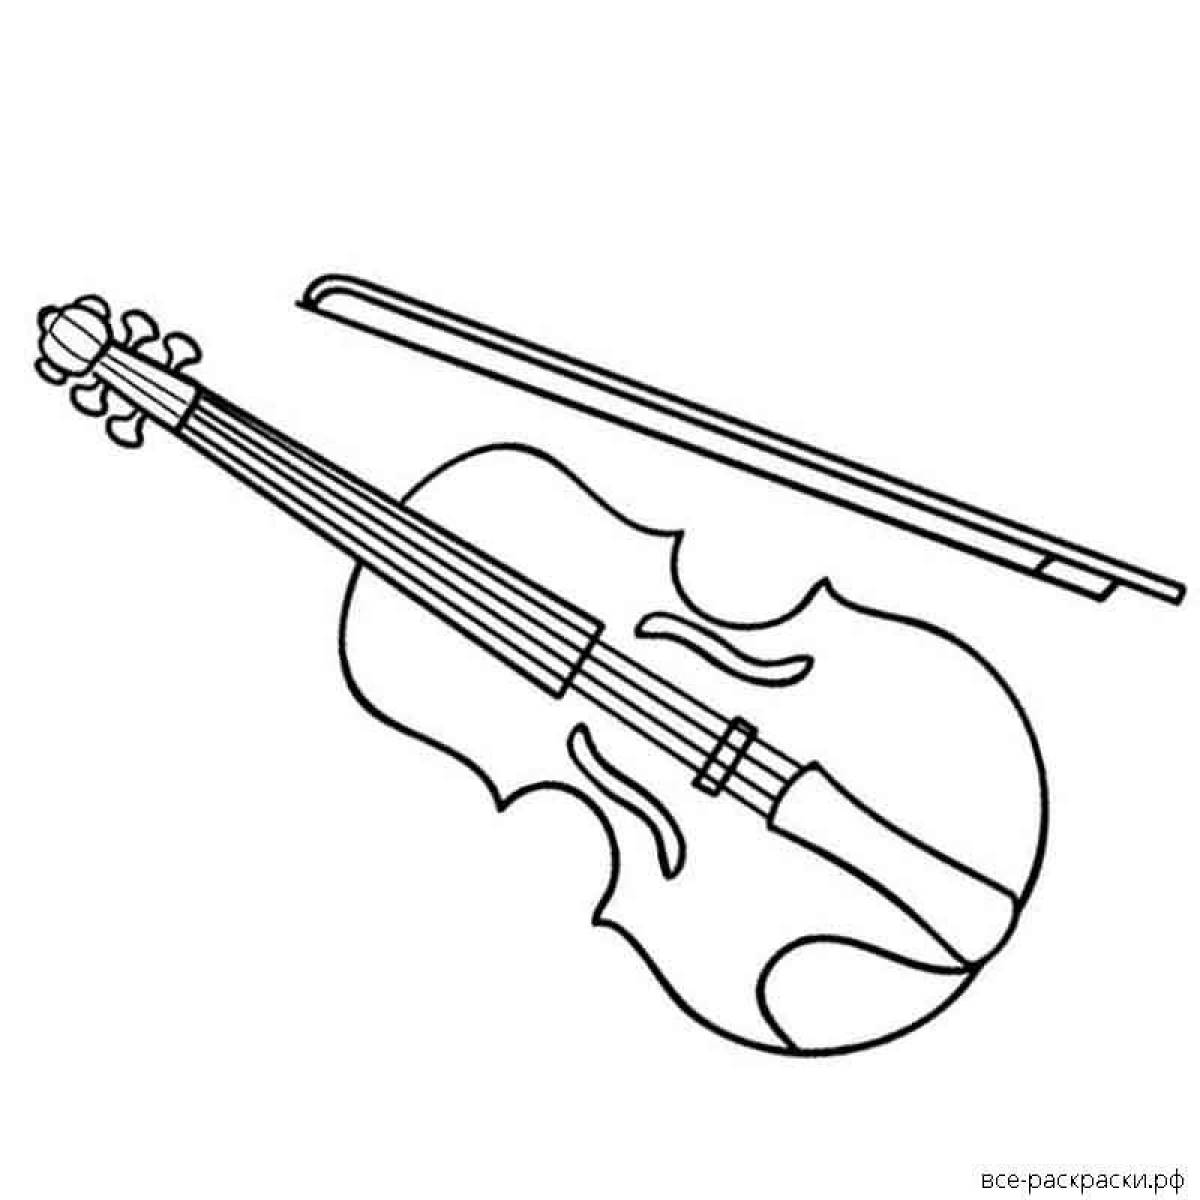 Искусно сделанная страница раскраски скрипки